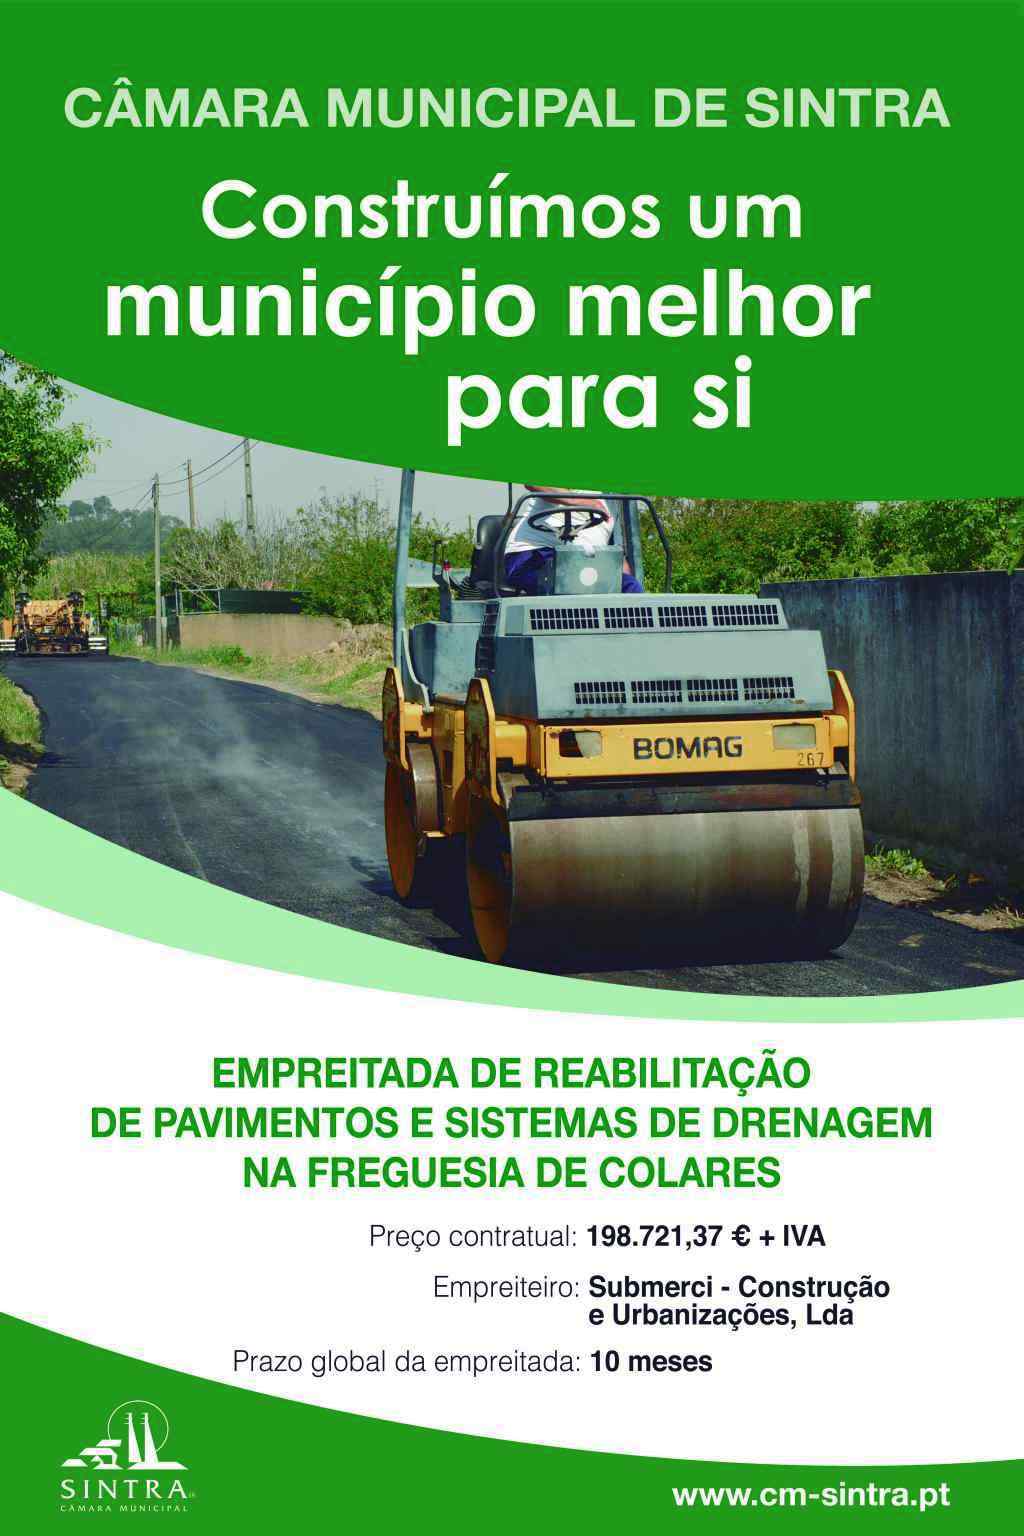 Empreitada de Reabilitação de pavimentos e sistemas de drenagem na freguesia de Colares